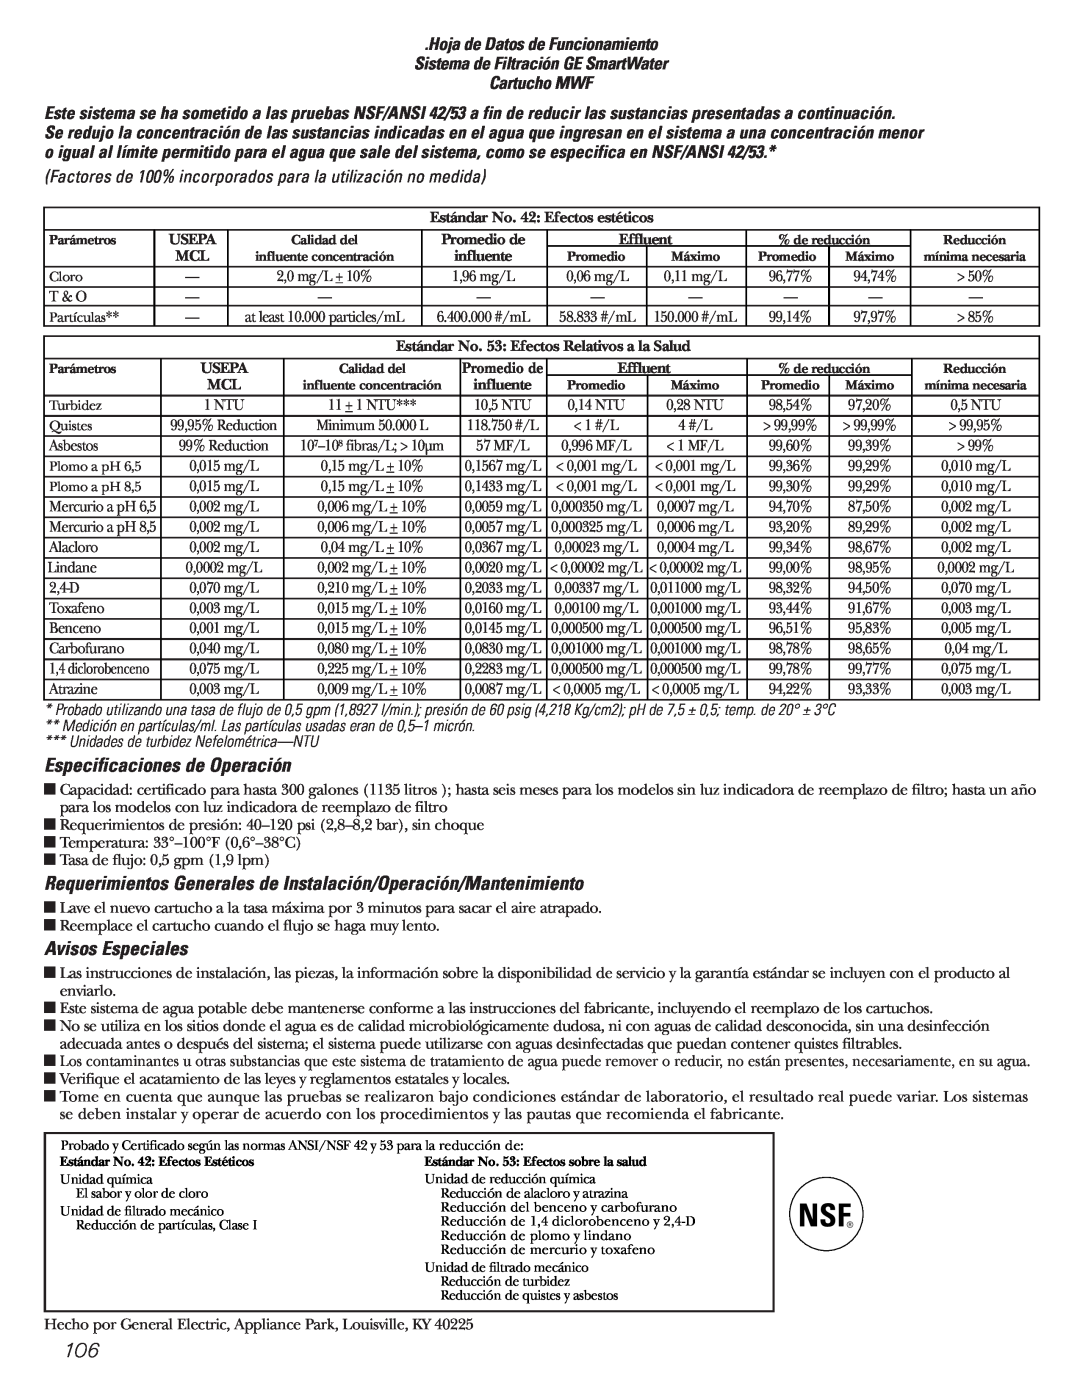 GE Monogram 23 Especificaciones de Operación, Avisos Especiales, Unidades de turbidez Nefelométrica—NTU 